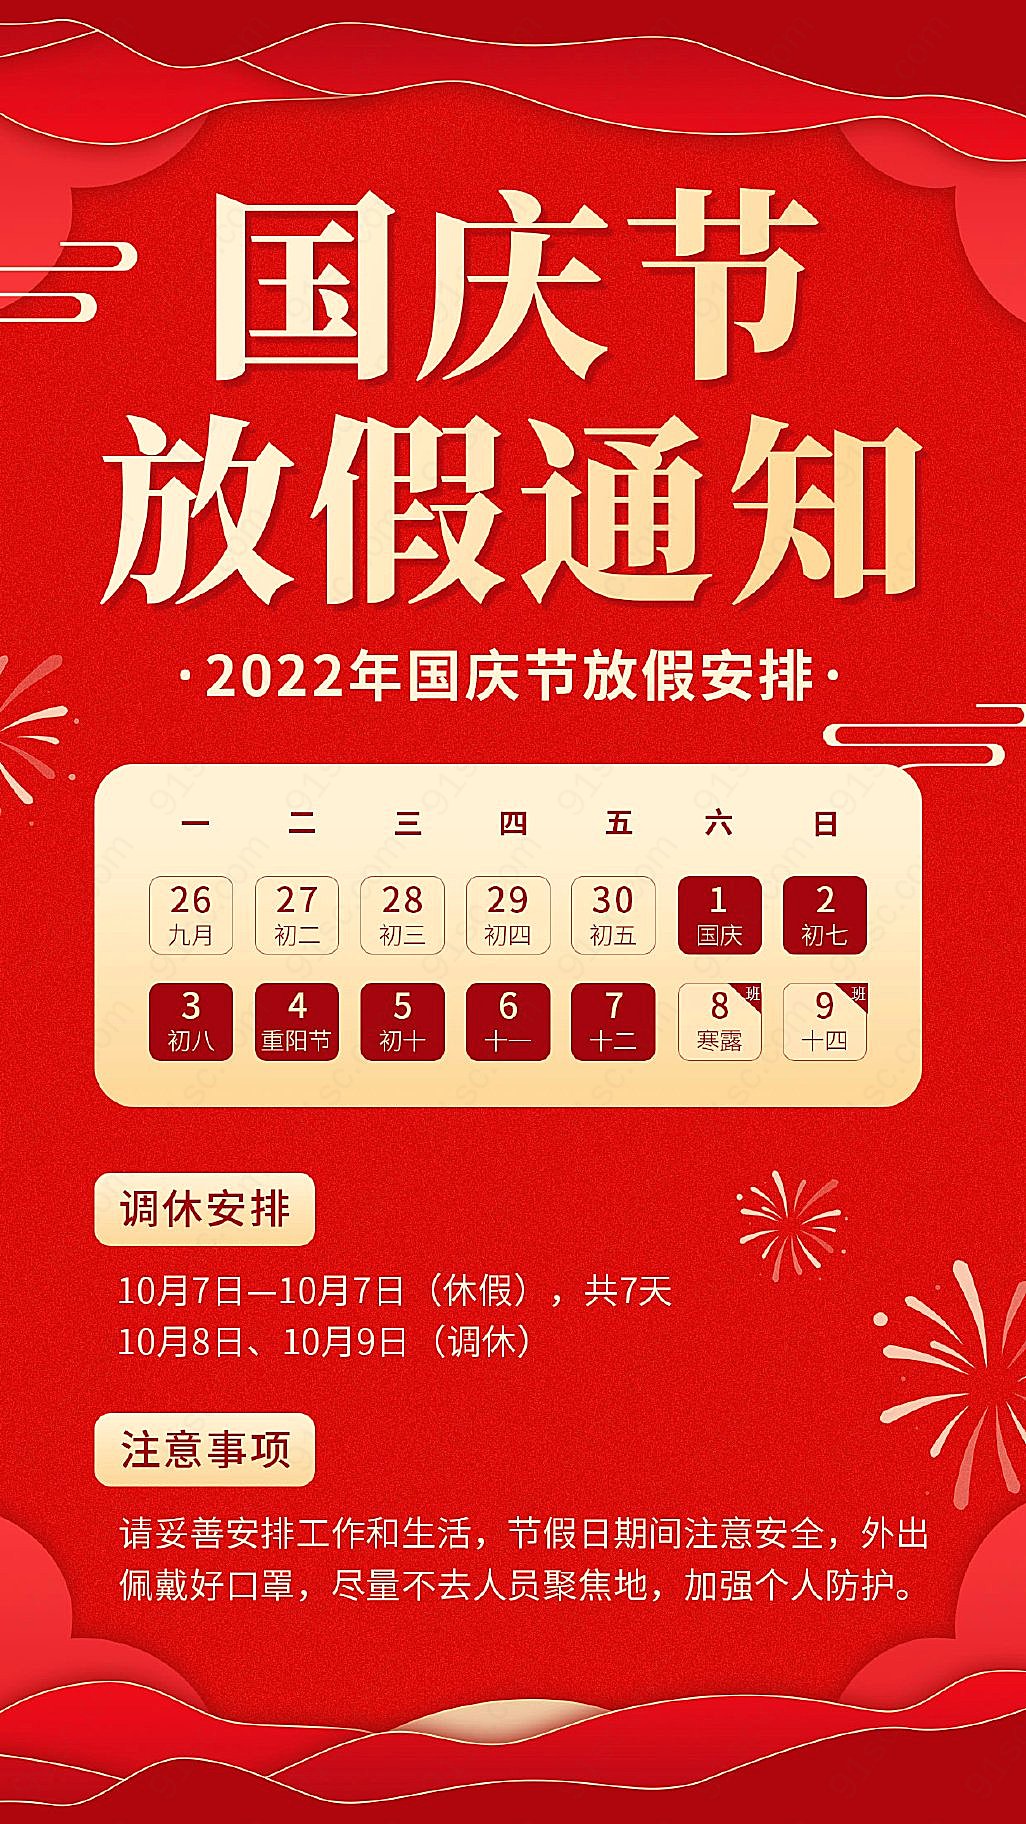 简约红风格国庆节假期通知海报新媒体用图下载